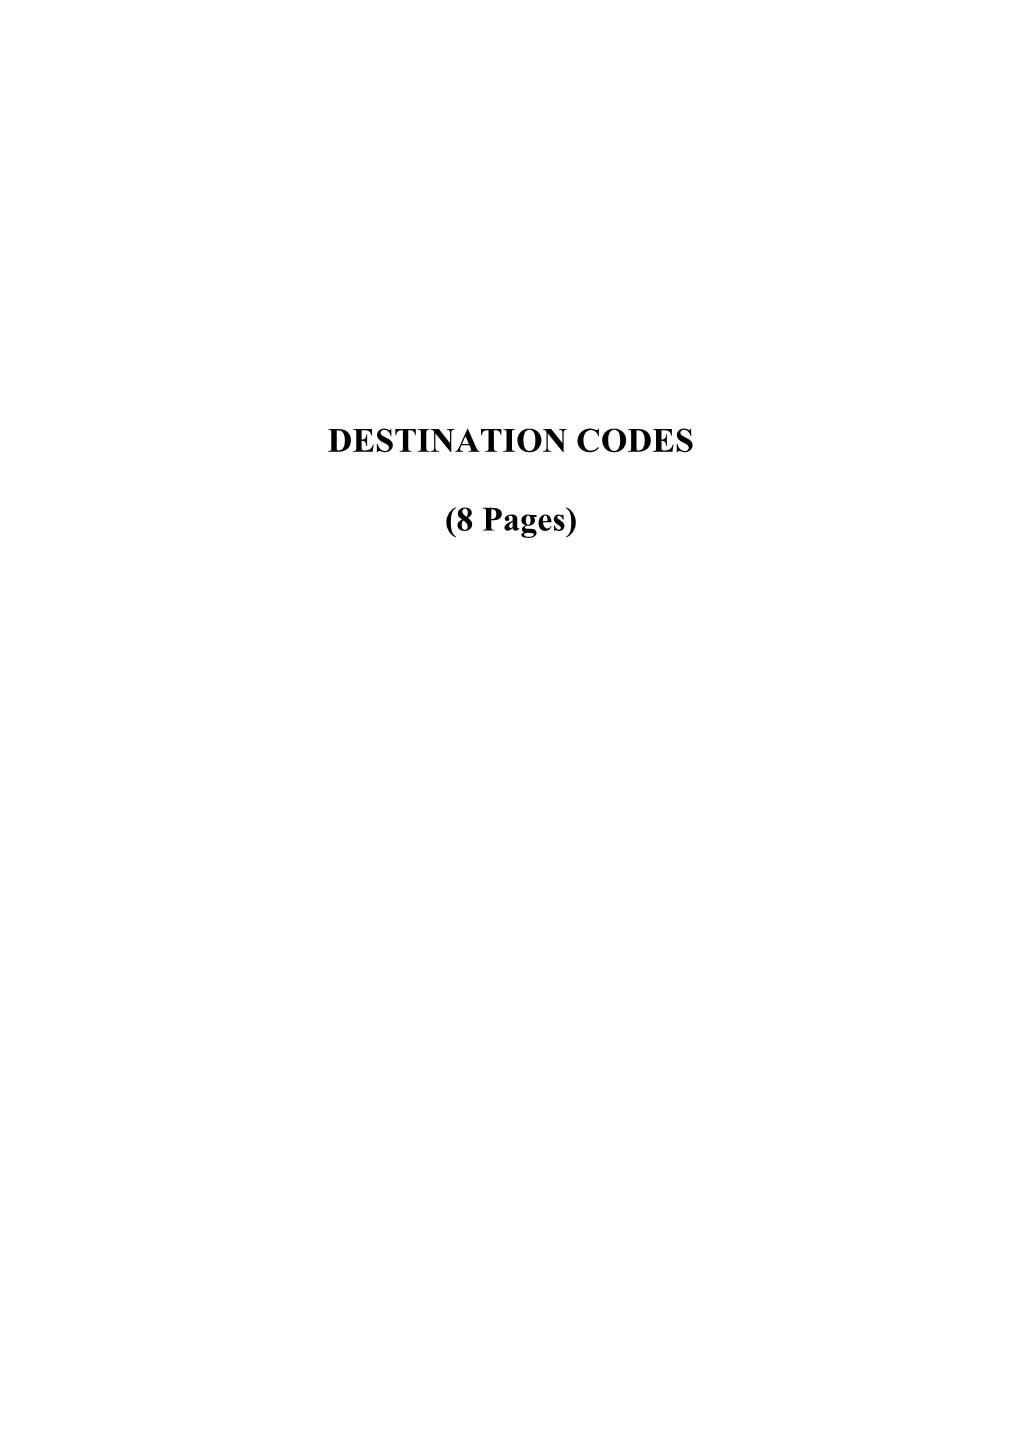 PPRS Rule 31 DESTINATION CODES